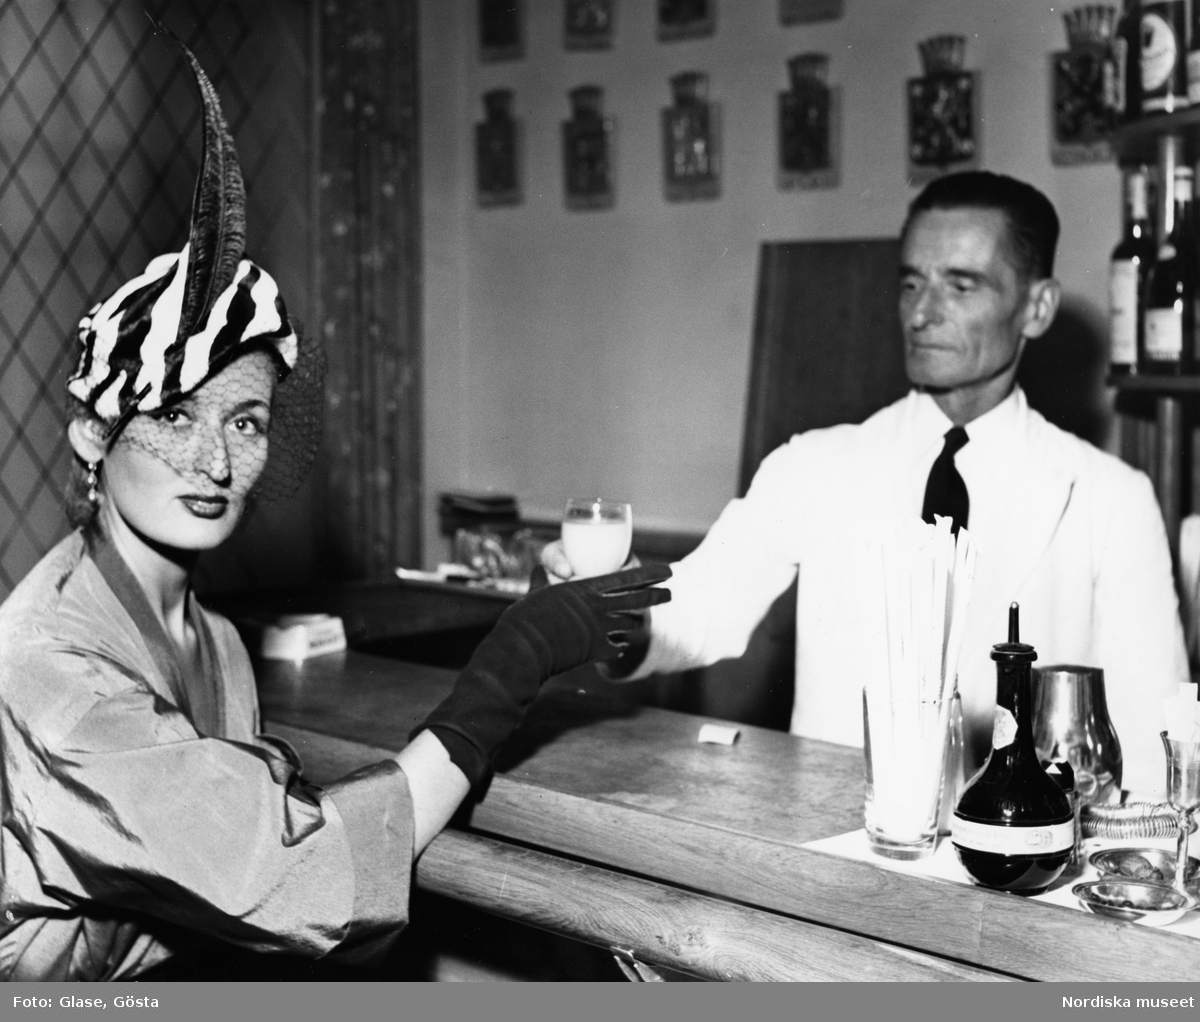 Dammode. Mannekäng, Kim Söderlund, blir serverad i en bar, klädd i zebramönstrad hatt med fjäder och flor och handskar. Man i vit kavaj.